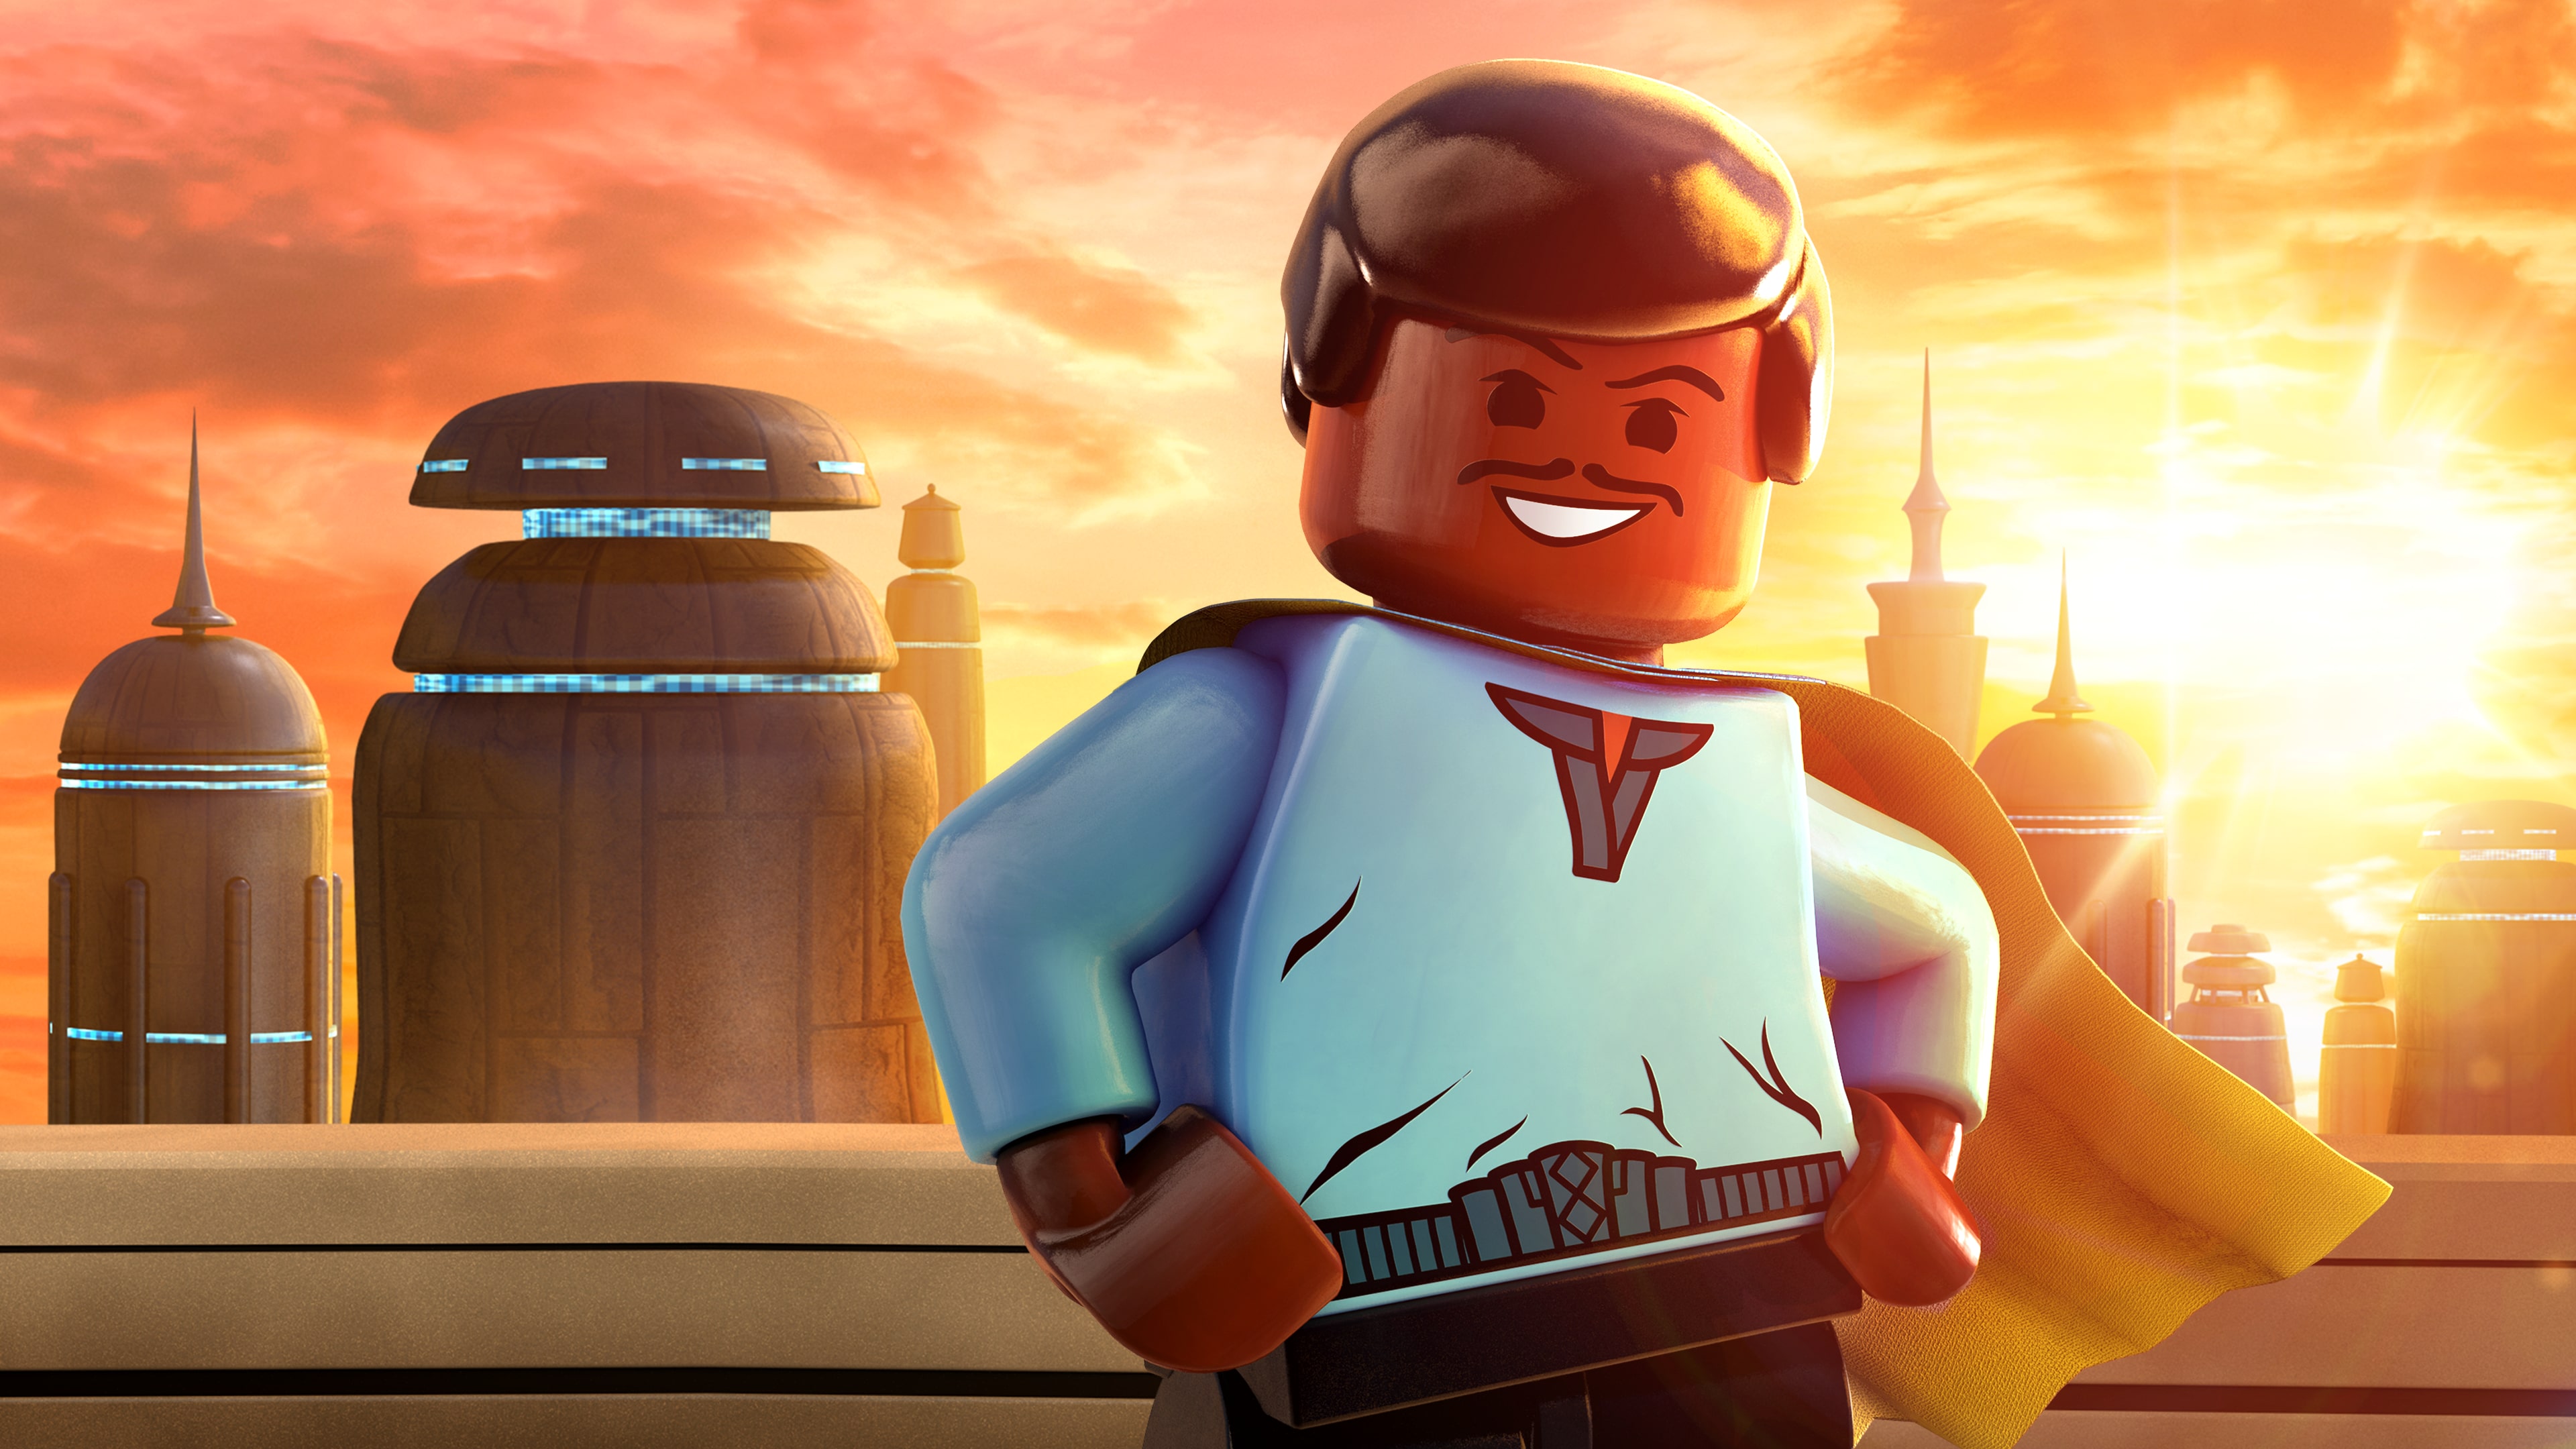 Personajes Clásicos LEGO® Star Wars™: La Saga De Skywalker